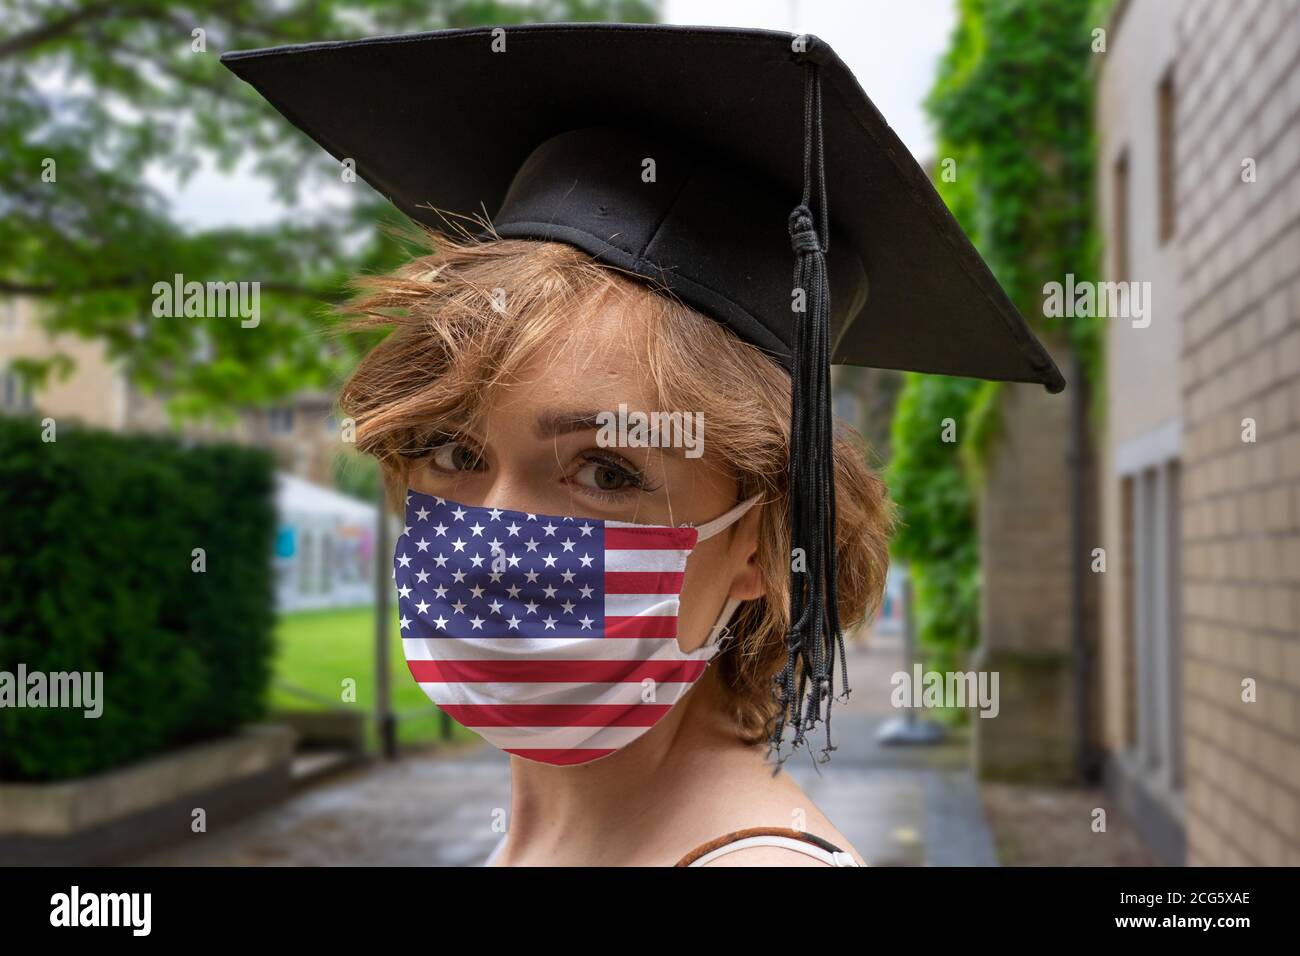 Student Abschluss mit Vereinigten Staaten von Amerika Design Protectice  Coronavirus Gesichtsmaske bei der Graduiertenfeier an der Universität  Stockfotografie - Alamy